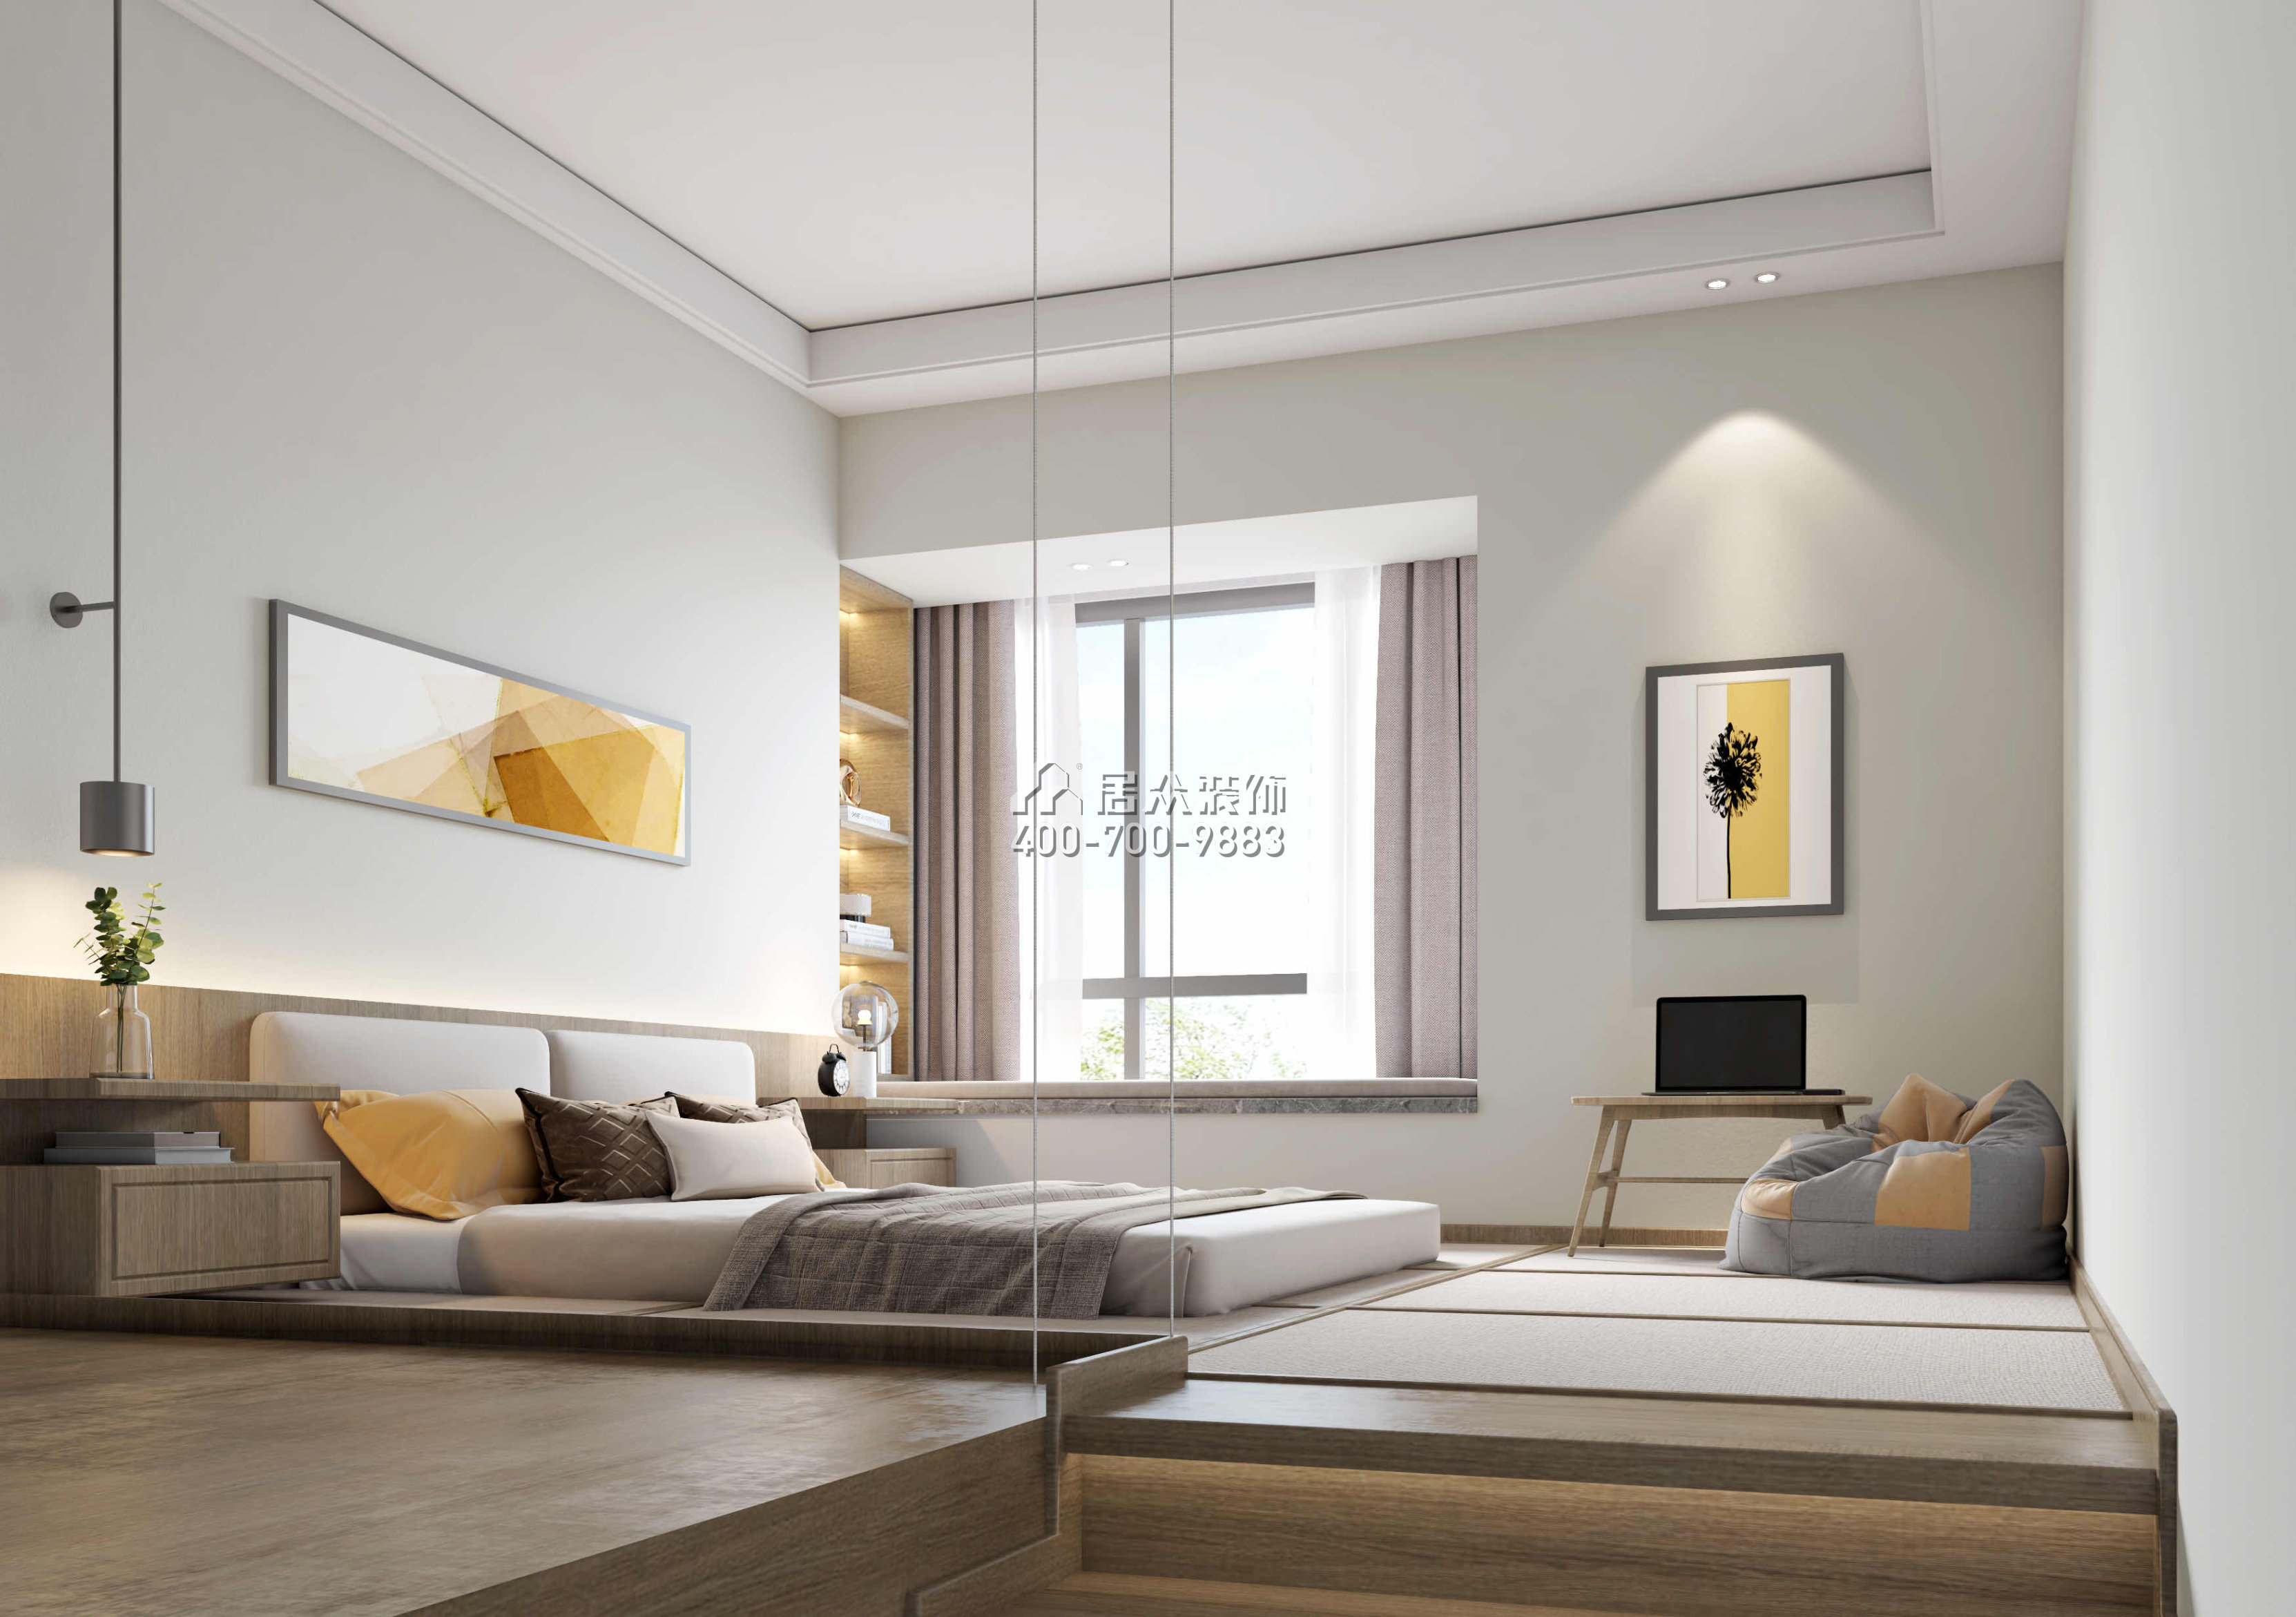 新世紀頤龍灣120平方米現代簡約風格平層戶型臥室裝修效果圖